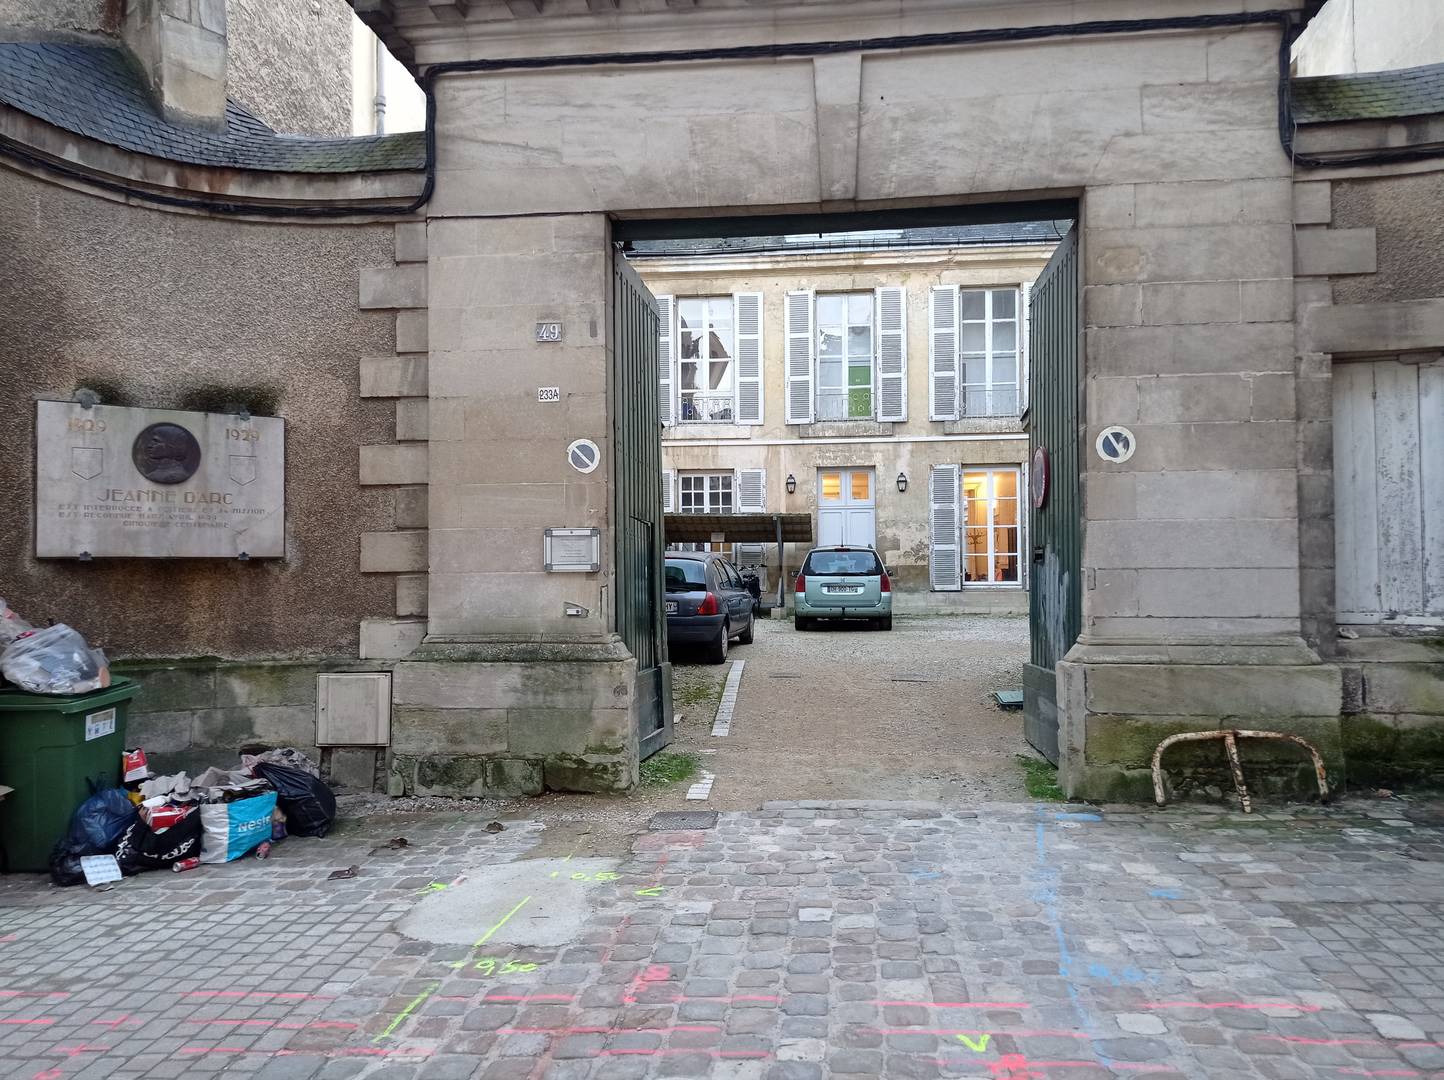 Улица в Пуатье с мемориальной доской Жанне д’Арк. Франция. 2024